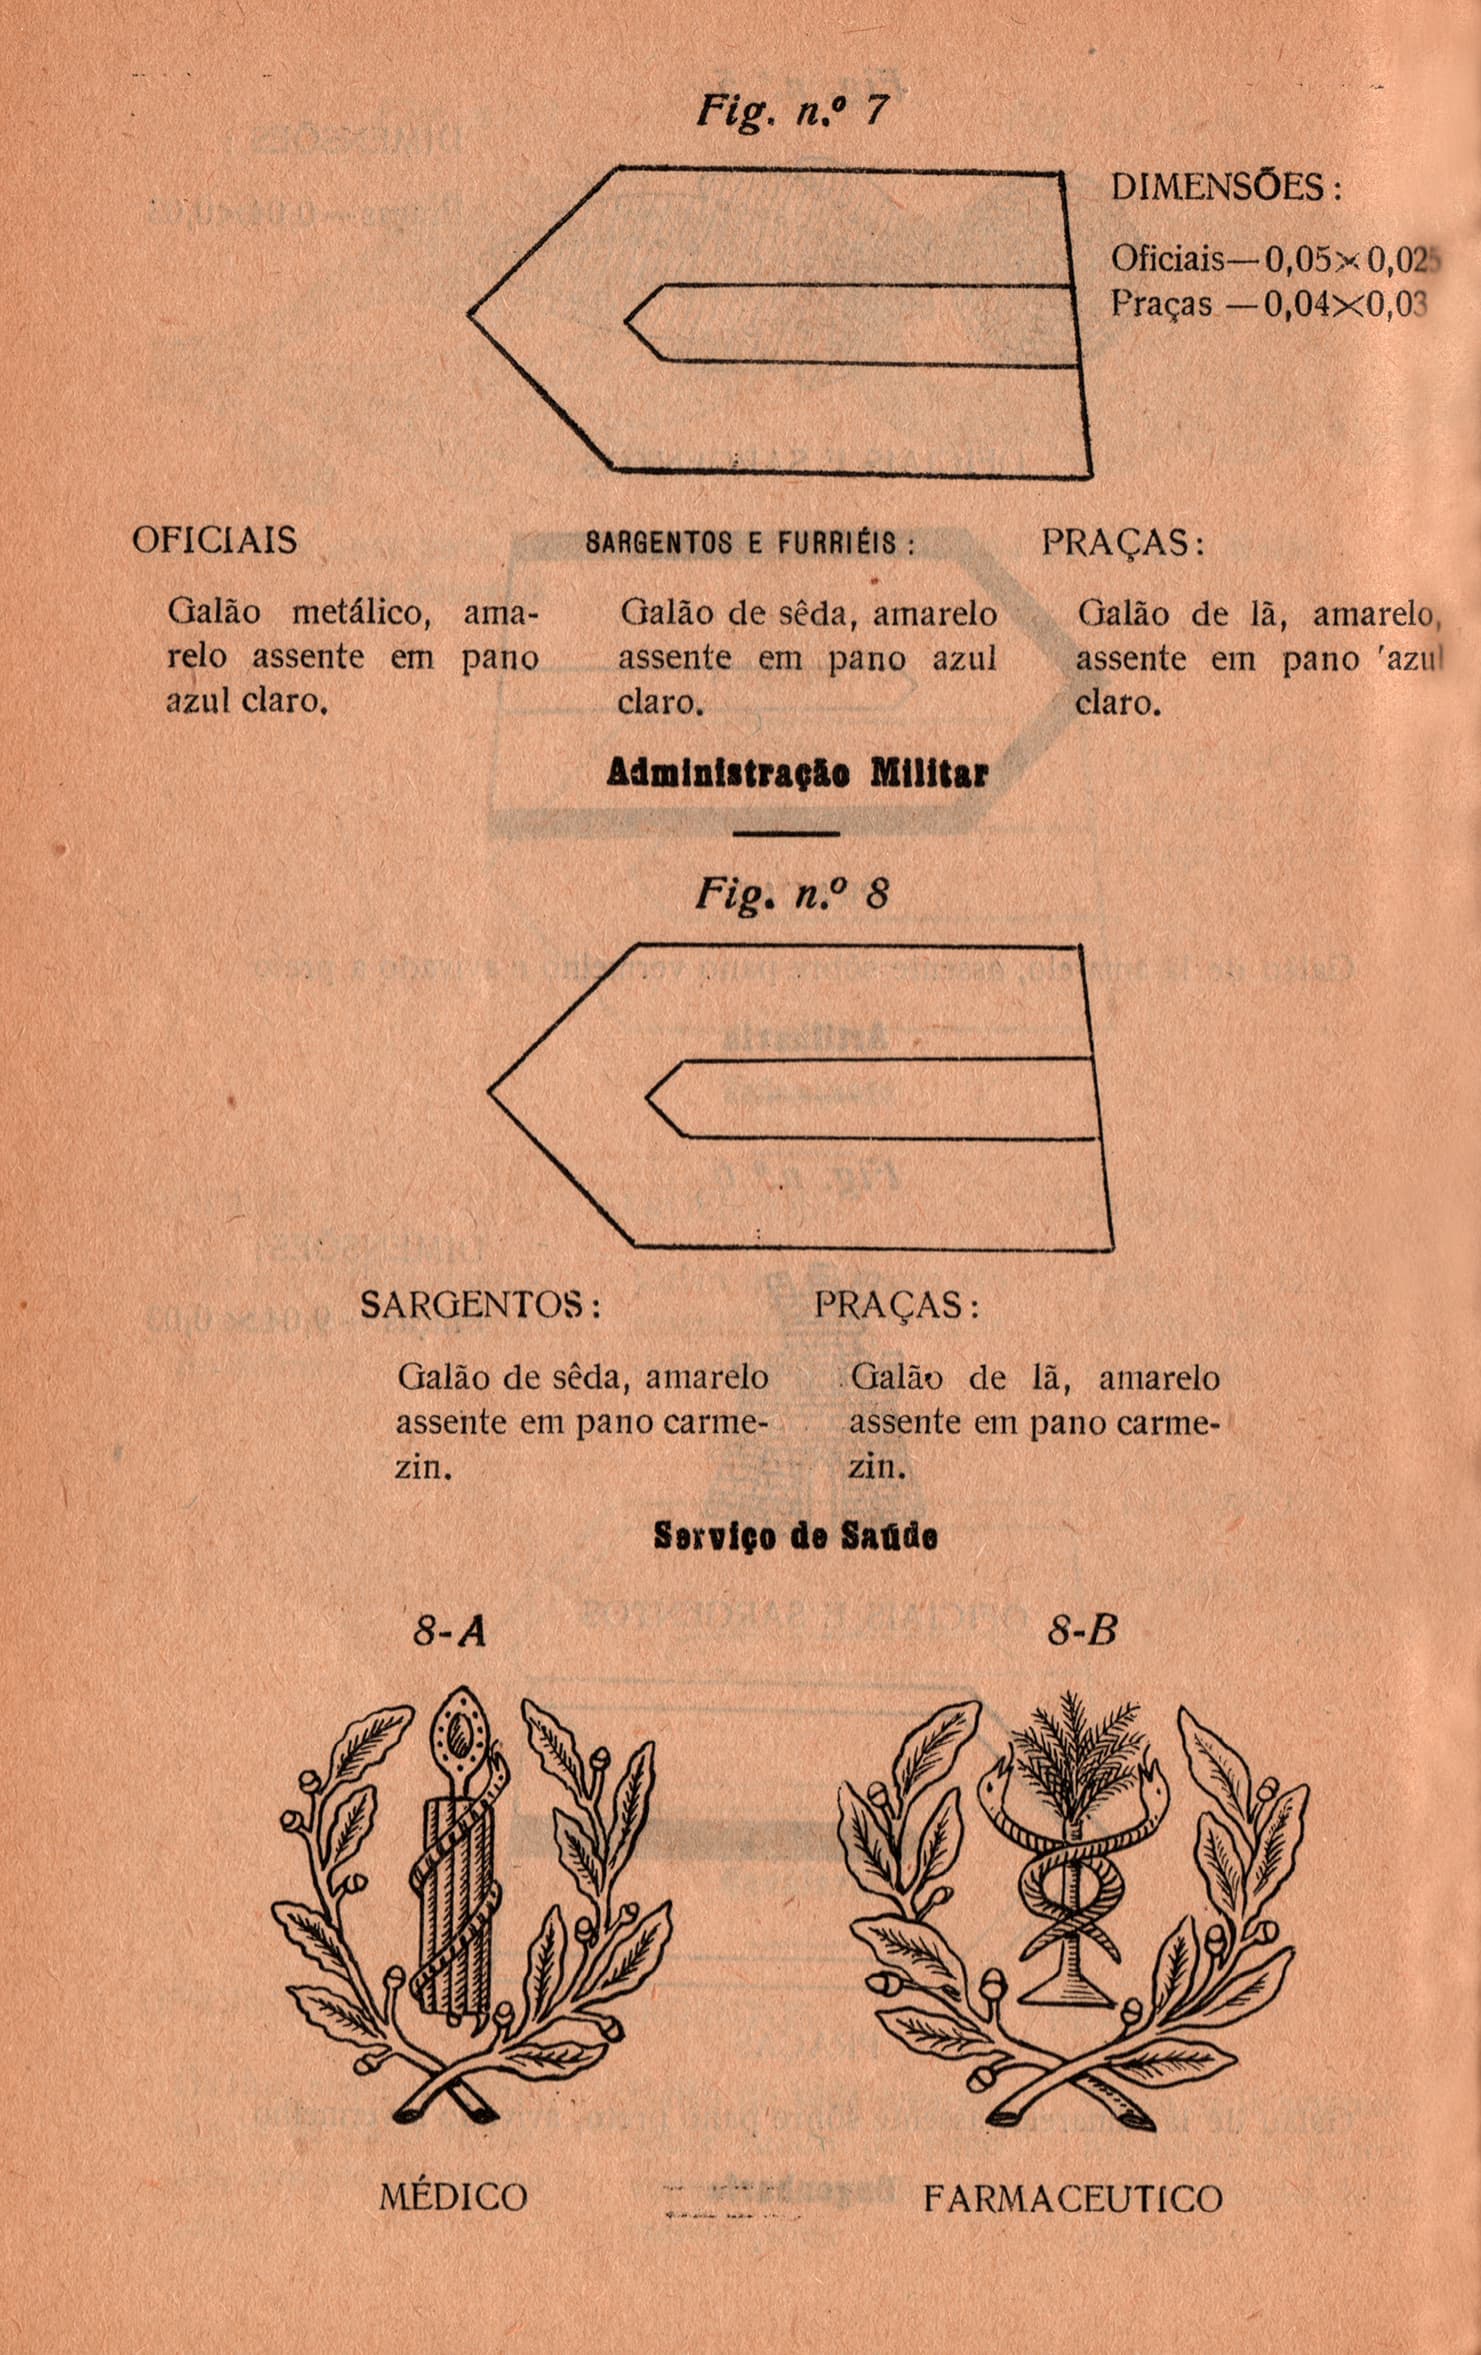 Figuras nº 7 e nº 8 da Circular nº 27 de 5 de julho de 1940.tif